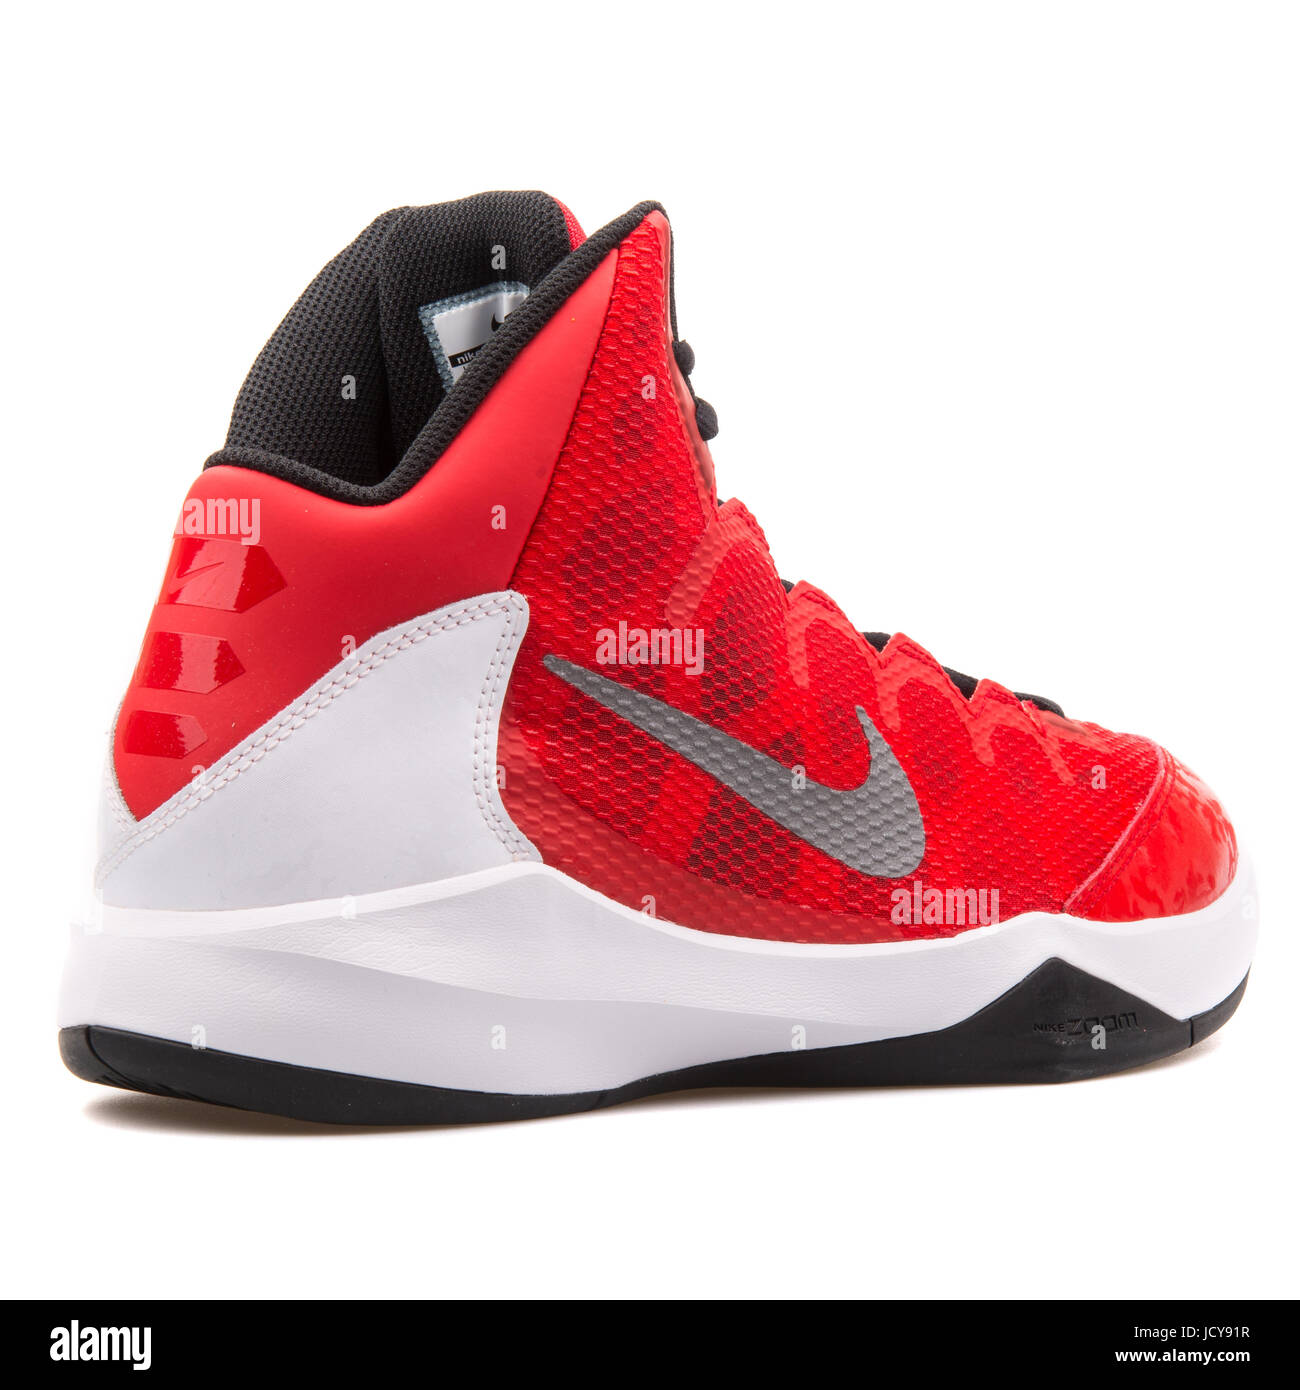 Nike Zoom ohne Zweifel rot, weiß und schwarz Herren Basketball-Schuhe - 749432-601 Stockfotografie